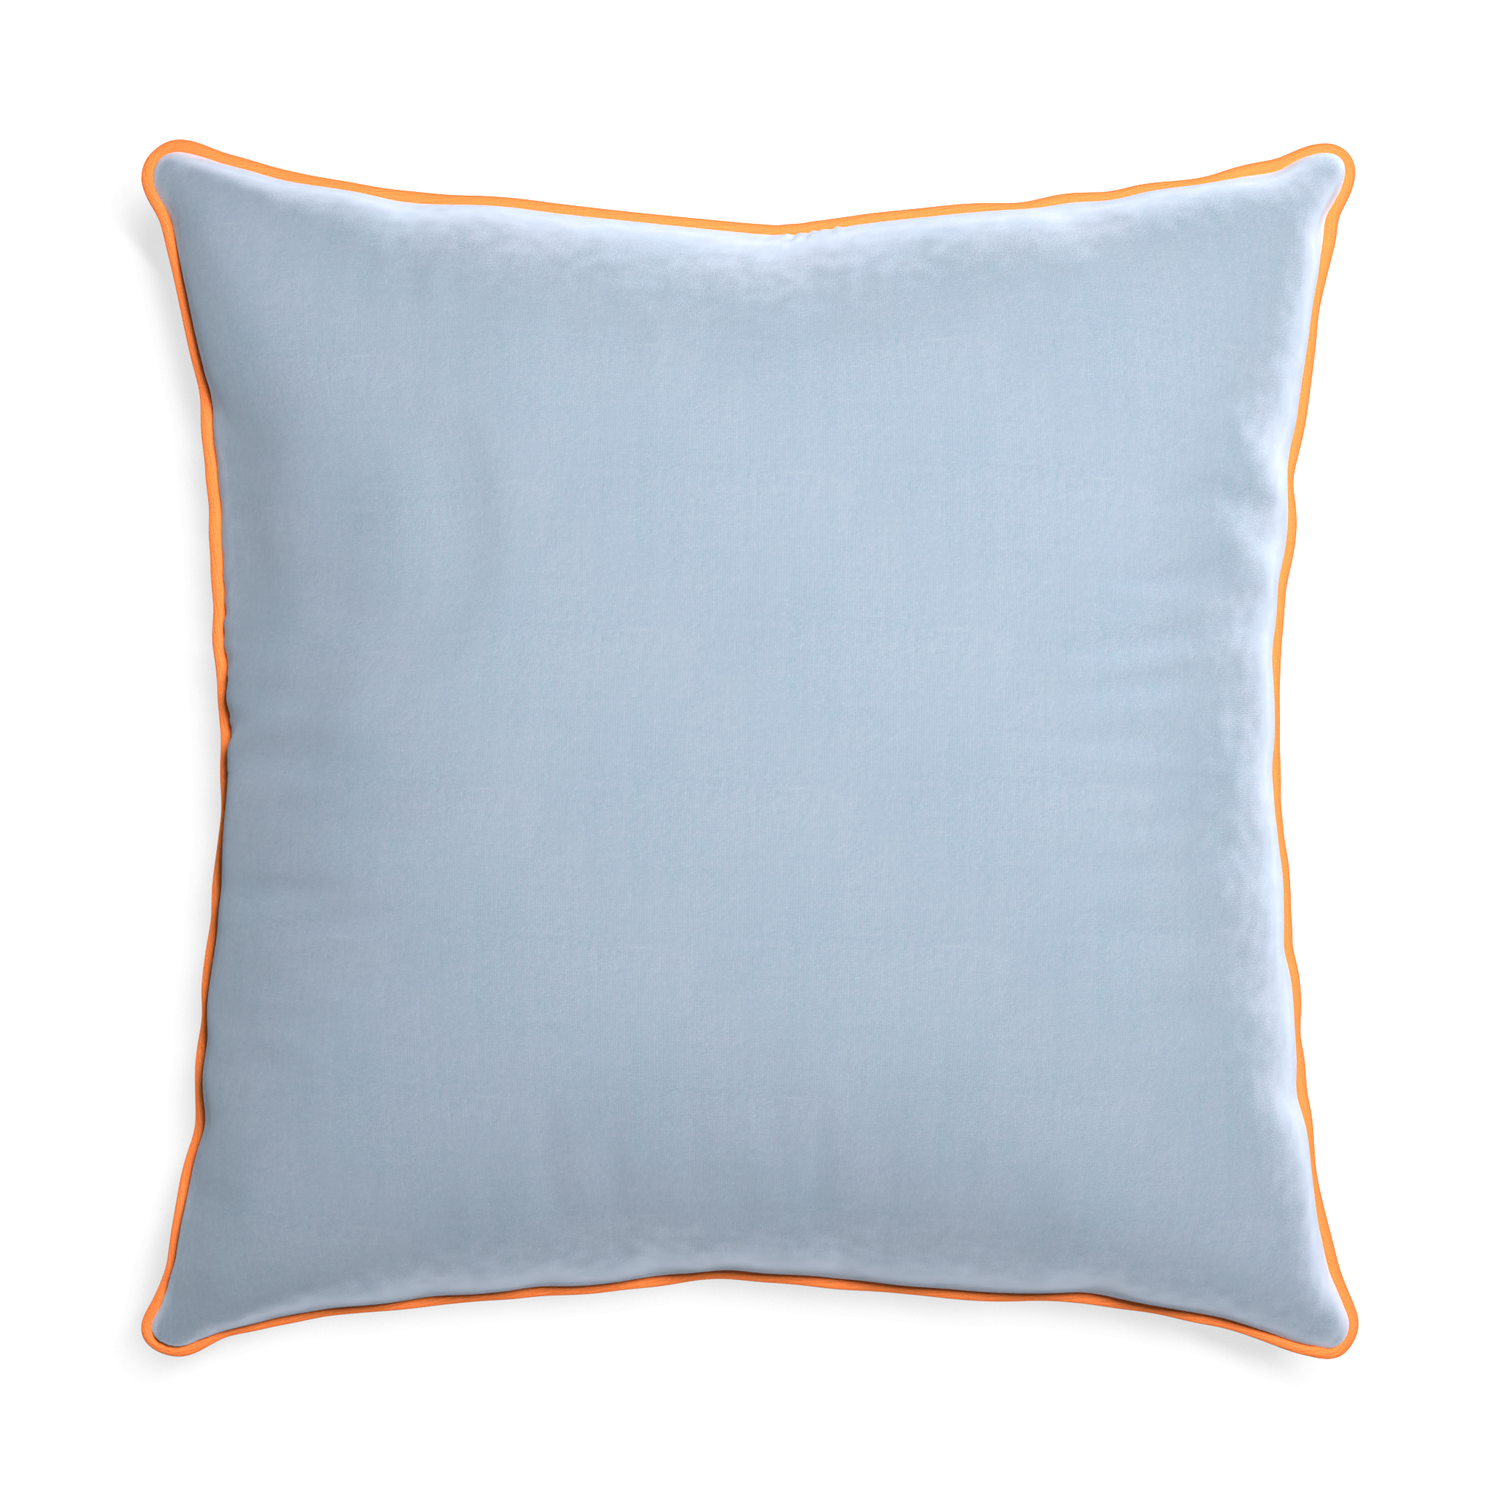 square light blue velvet pillow with orange piping